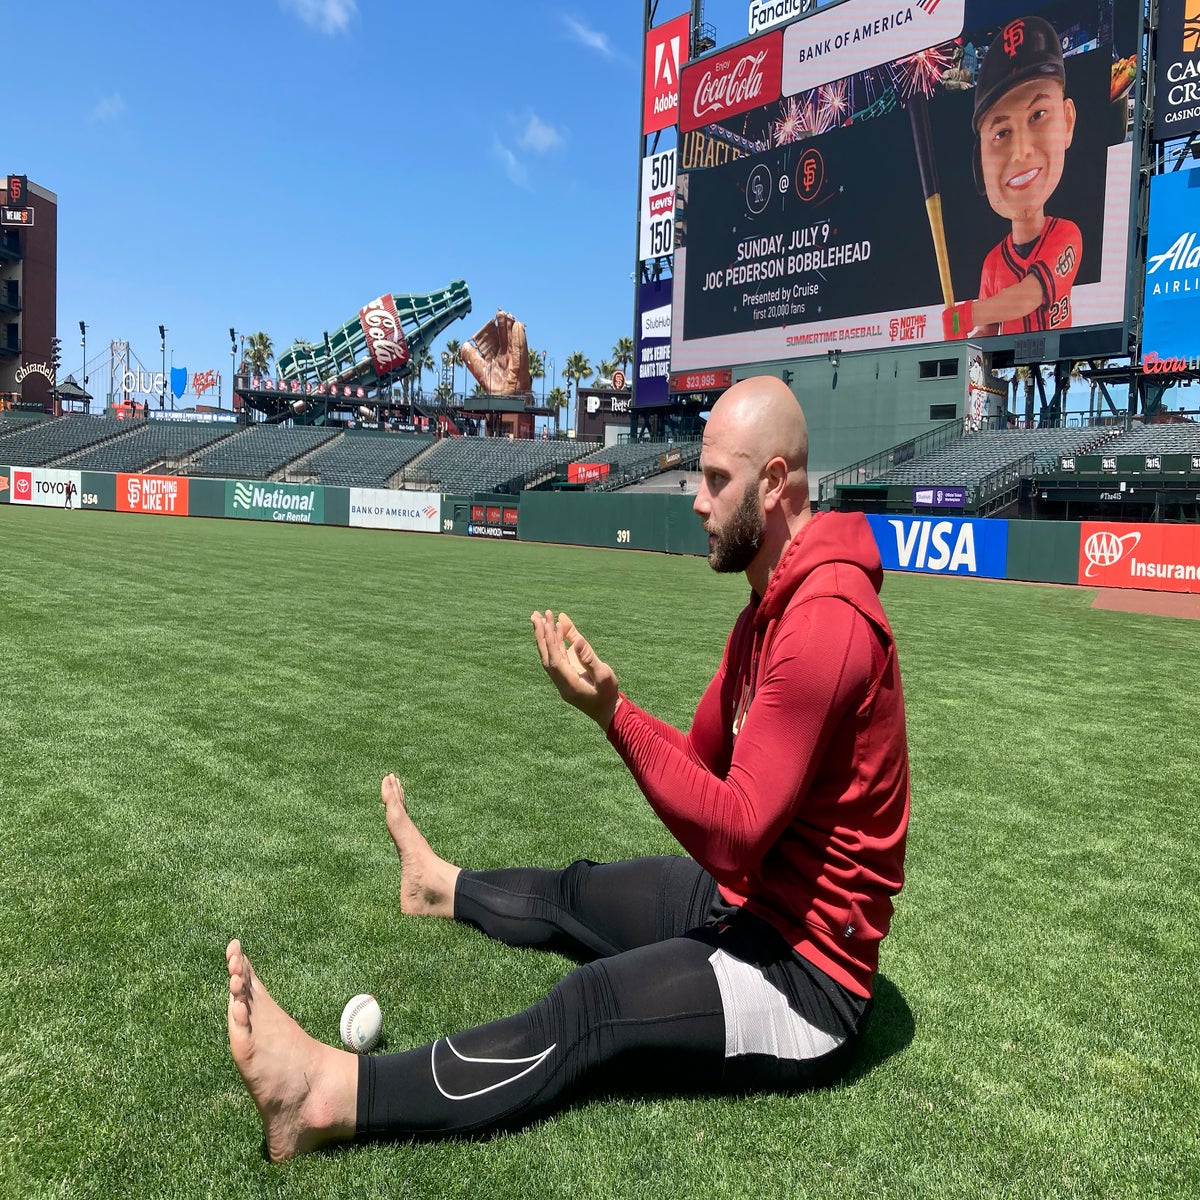 How barefoot walks, mindfulness made Giants' Joc Pederson an All-Star again